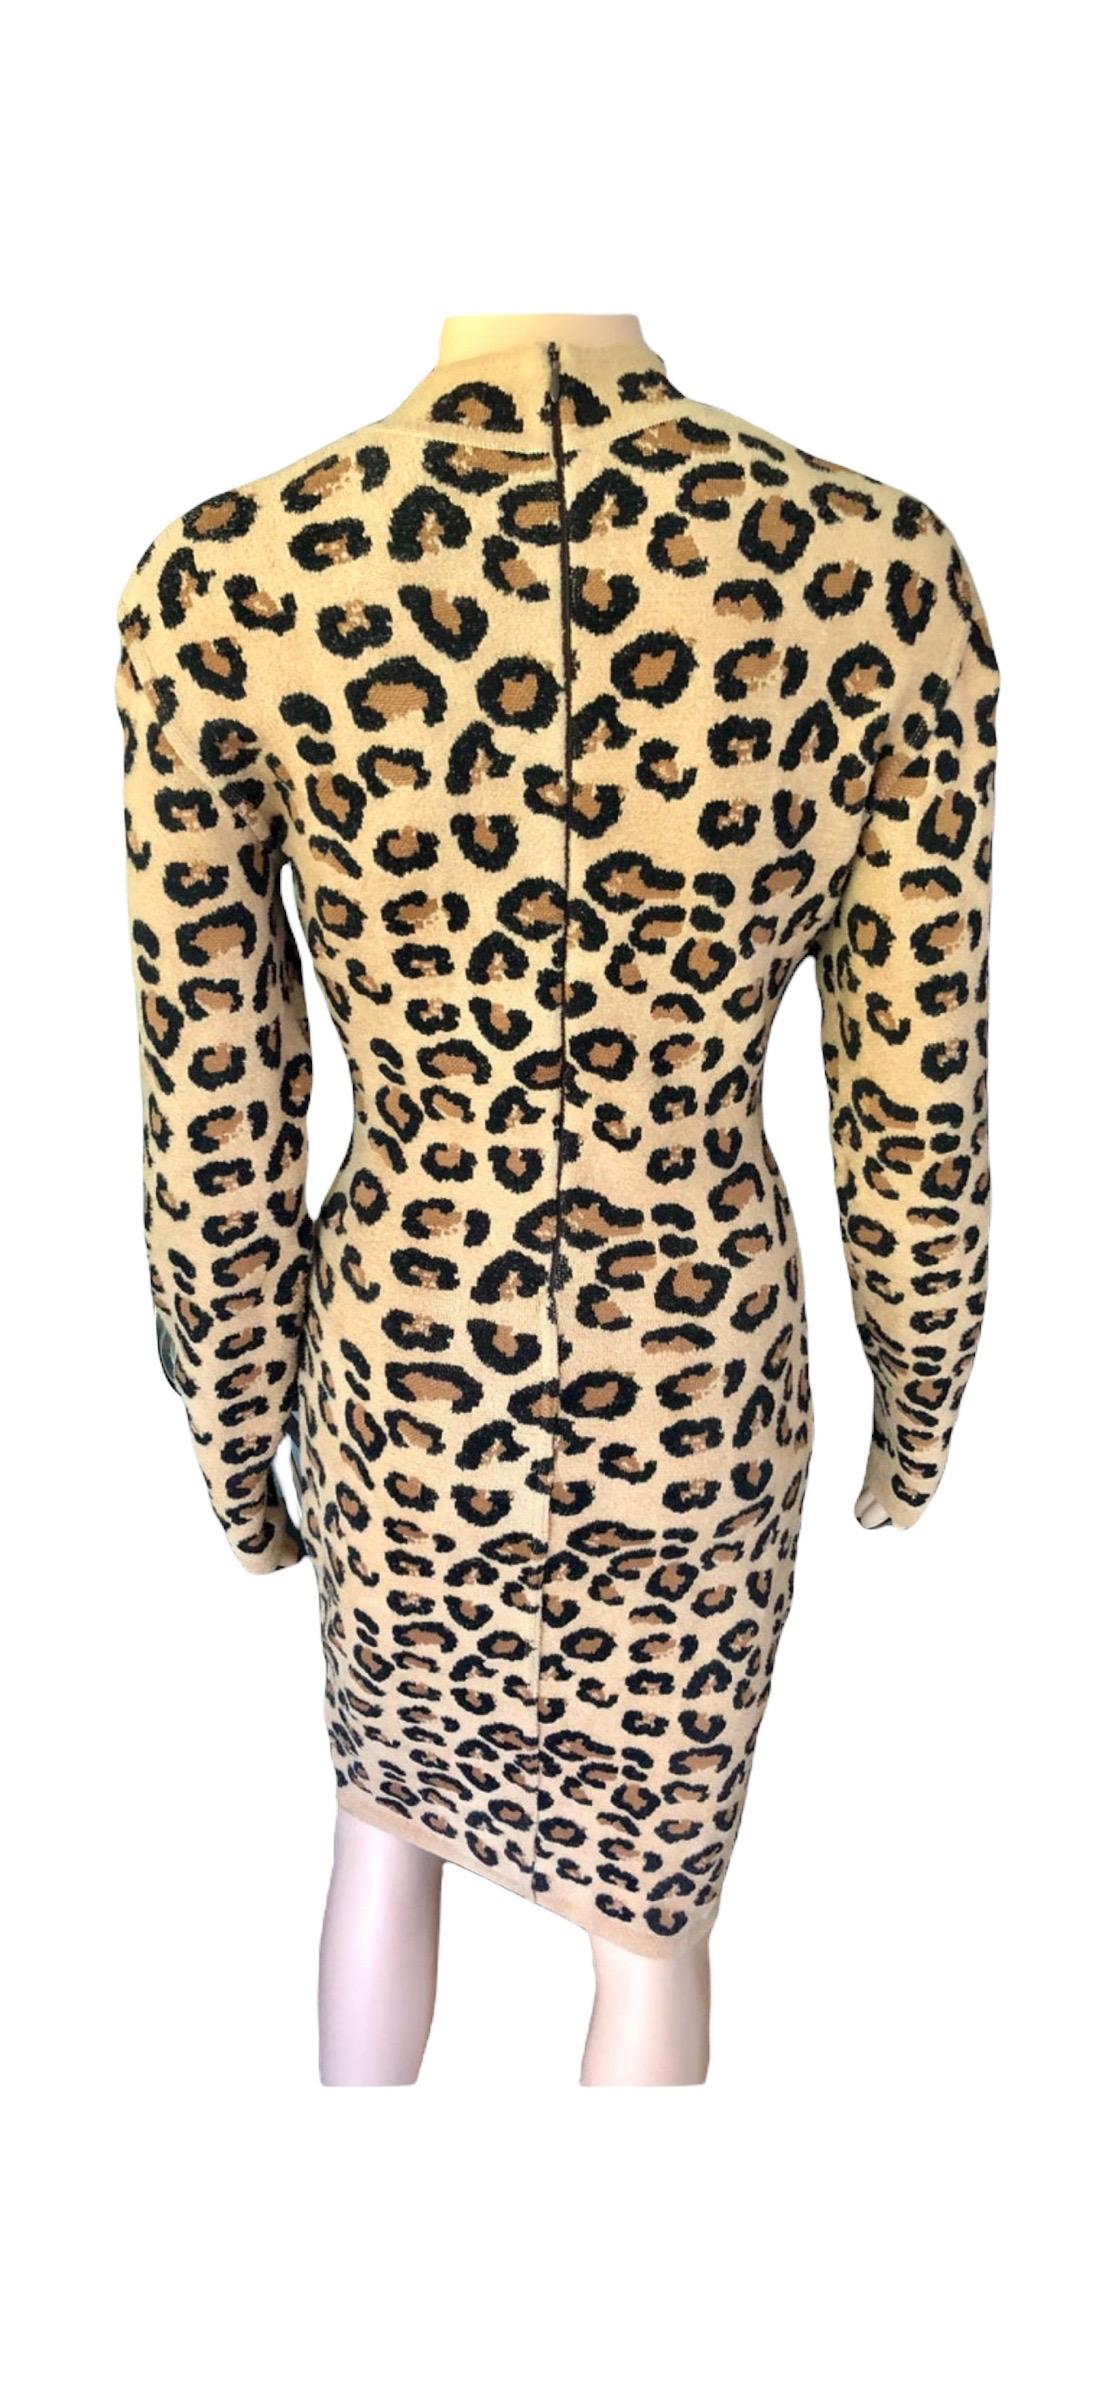 Azzedine Alaia F/W 1991 Runway Vintage Iconic Leopard Print Bodycon Dress For Sale 3